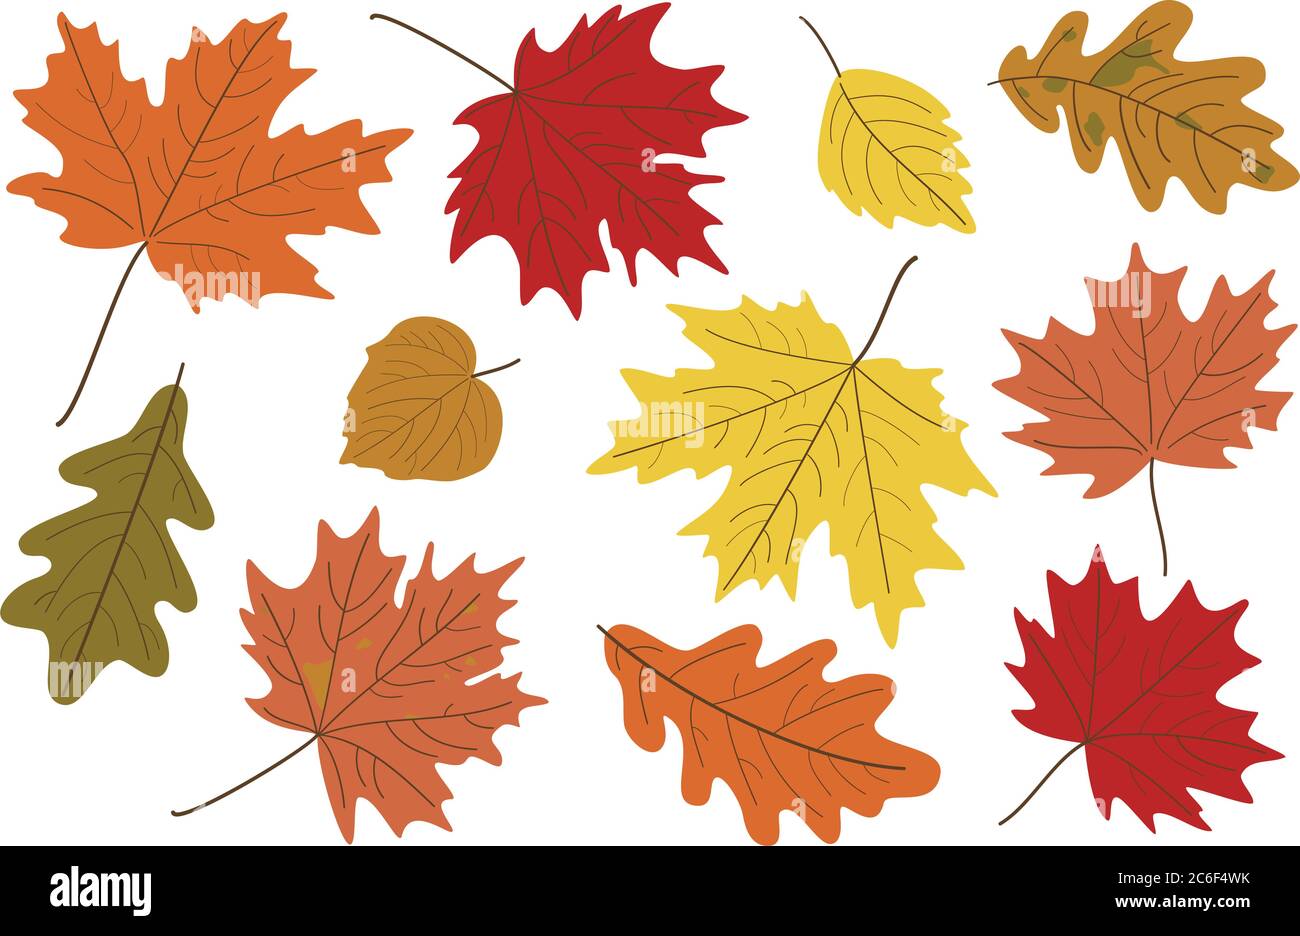 Illustrazione vettoriale, insieme di foglie d'autunno realistiche e luminose. Caduta foglie sfondo. Foglie di acero, tiglio, quercia e pioppo. Illustrazione Vettoriale